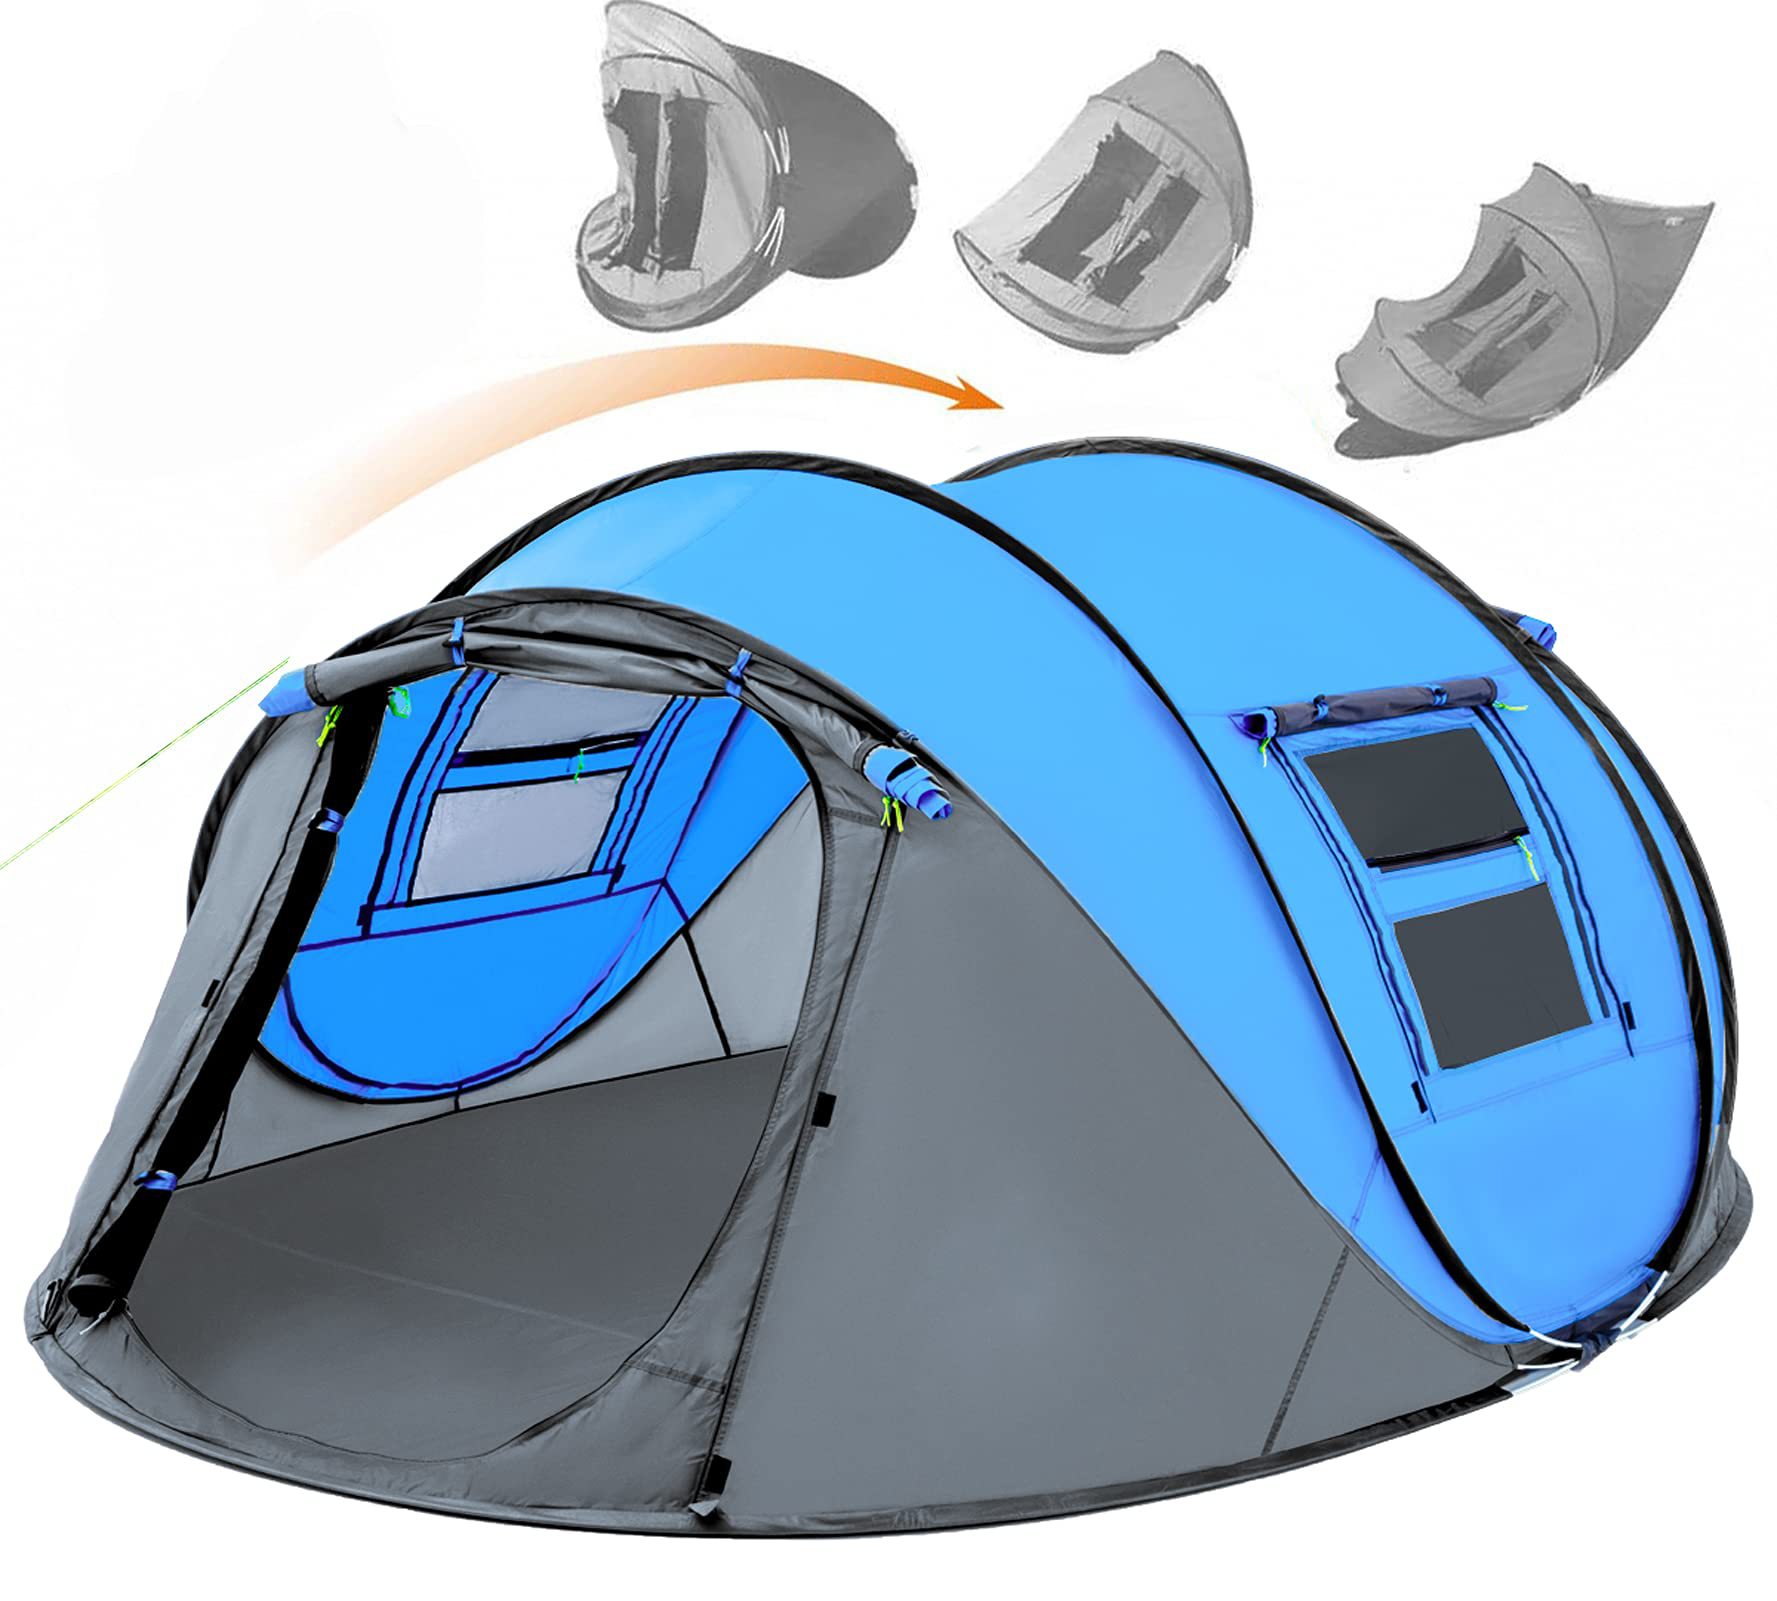 Einfaches Pop-Up-Zelt für 4 Personen, wasserdicht, automatischer Aufbau, 2 Türen, sofortiges Familienzelt für Camping, Wandern und Reisen